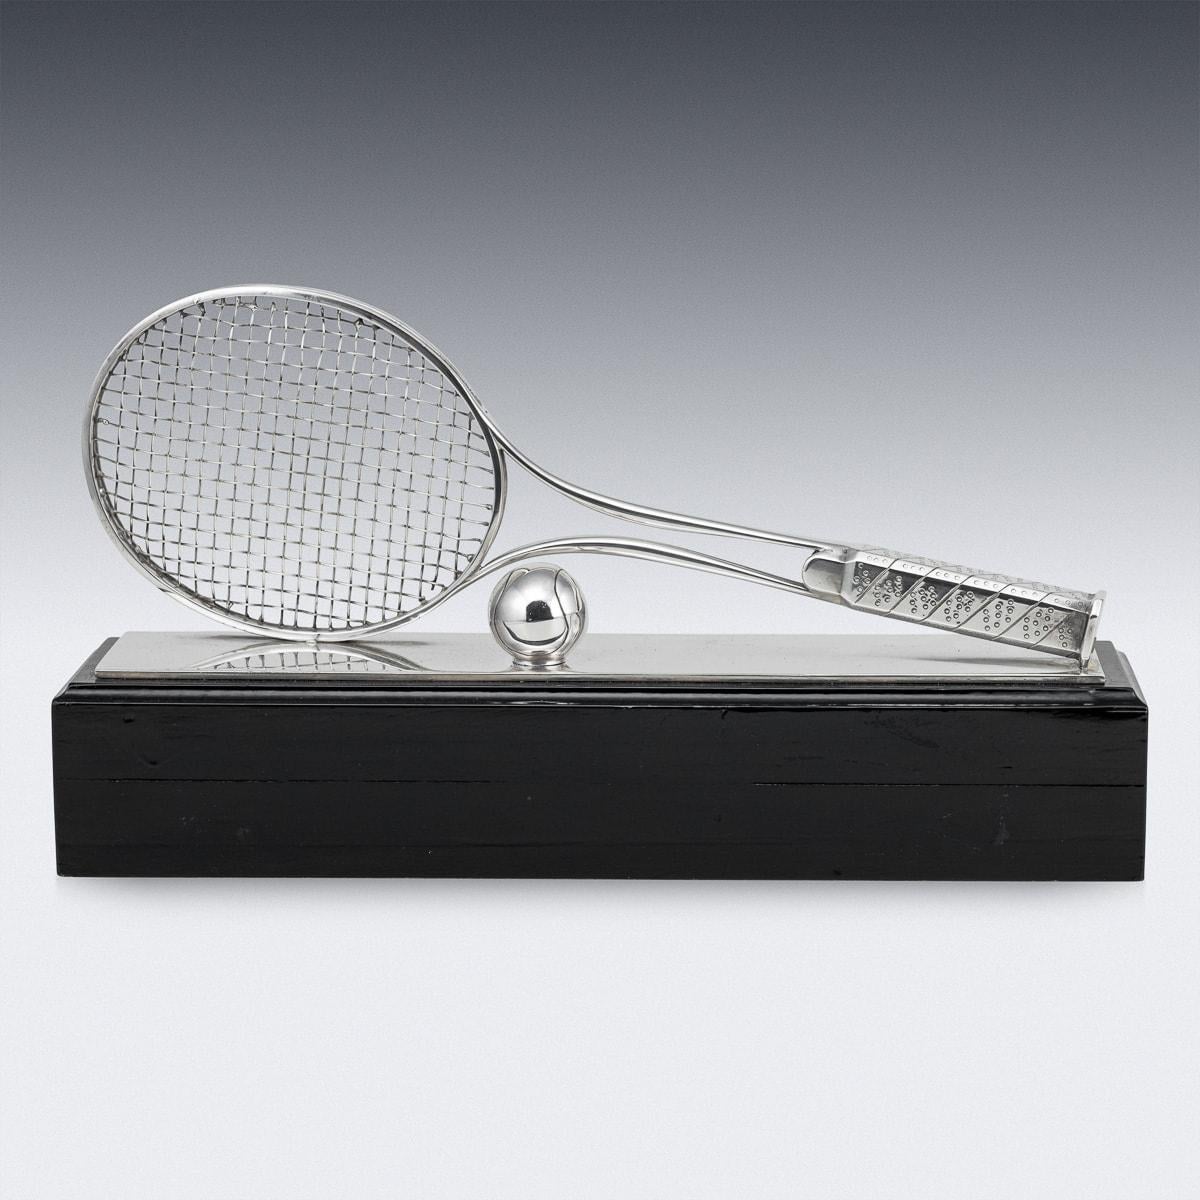 Paire de trophées de tennis anglais en métal argenté du 20e siècle. Conçue comme une raquette et une balle sur un support en bois ébène, cette paire de trophées serait un excellent prix pour une équipe de double ou pour une vitrine